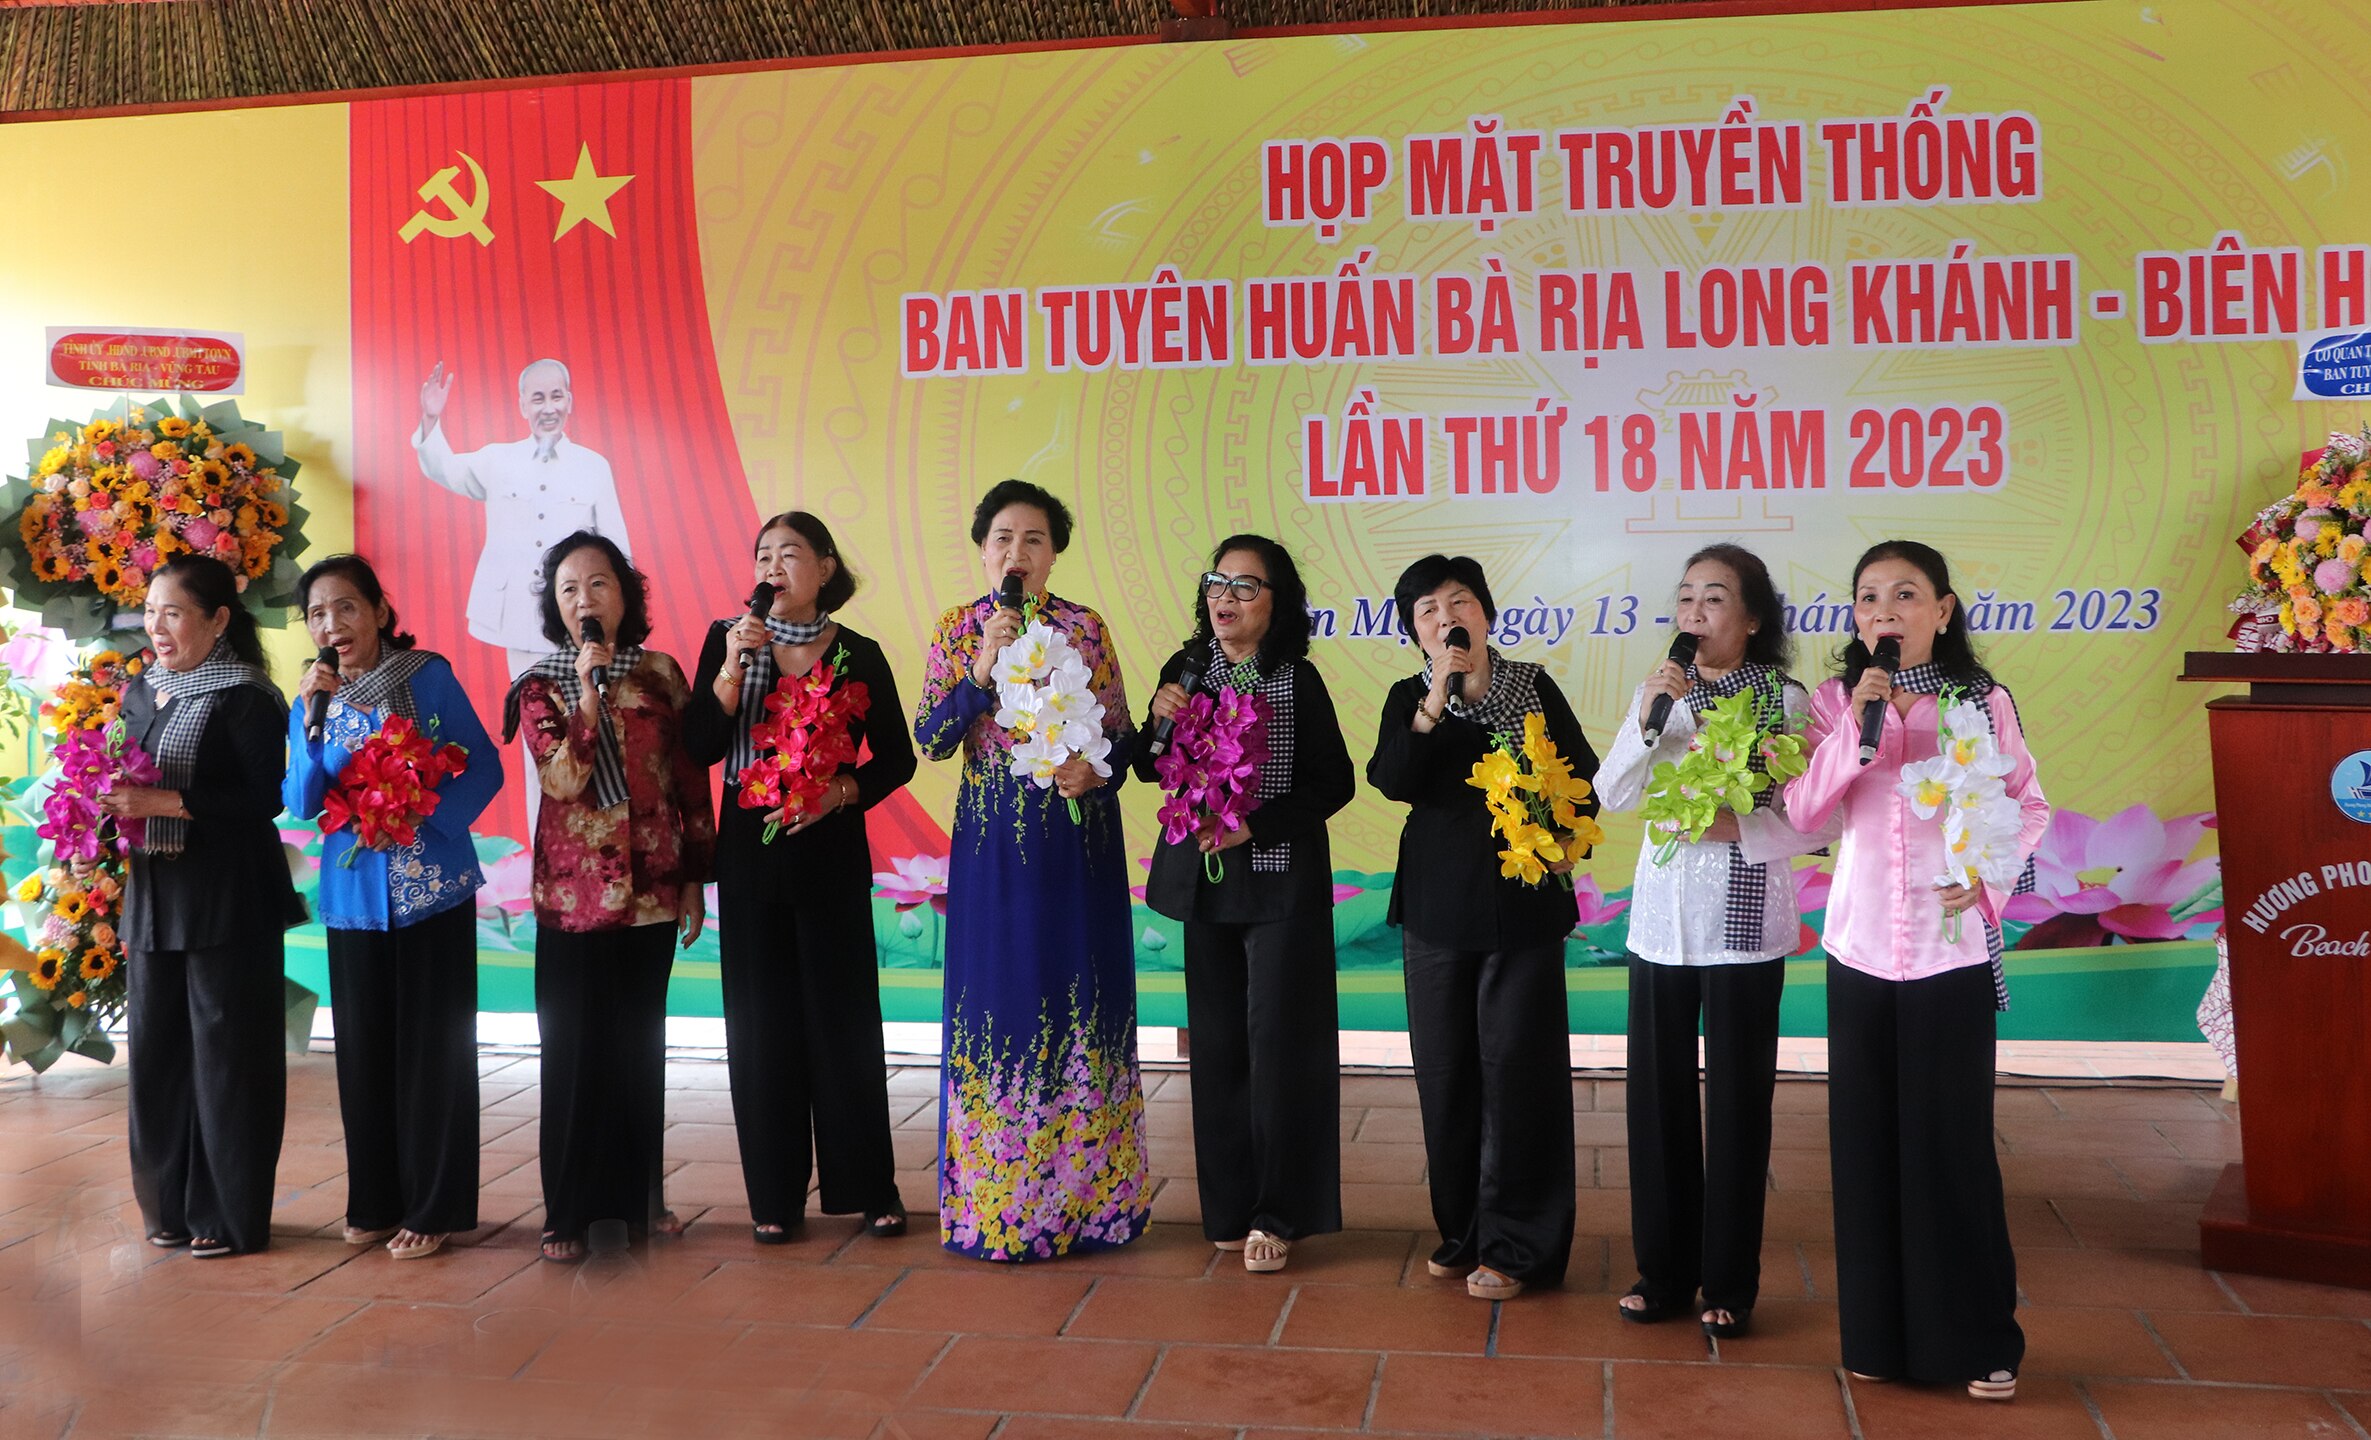 Đoàn văn công của Ban Tuyên huấn Bà Rịa-Long Khánh-Biên Hòa biểu diễn tại buổi họp mặt.